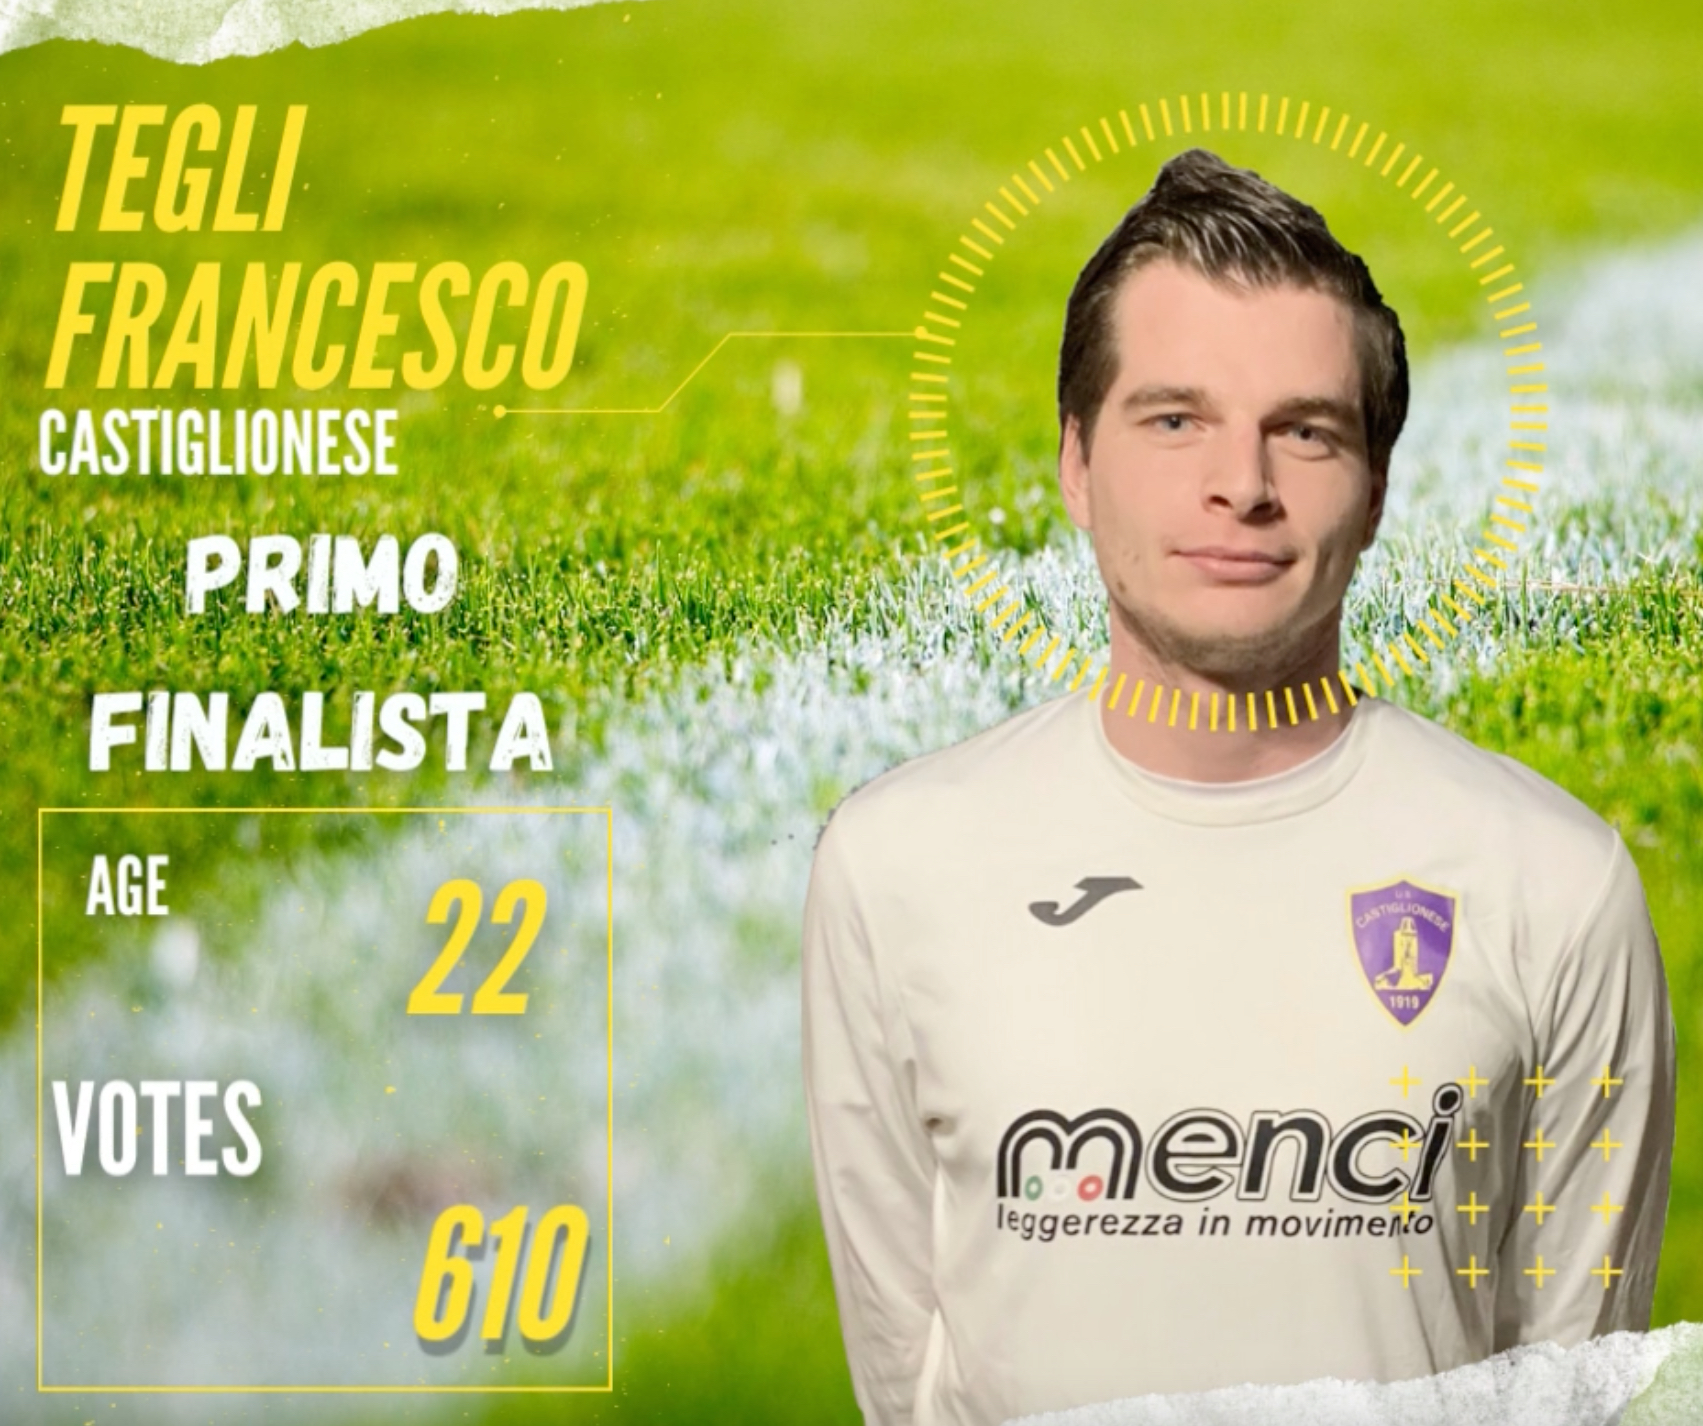 Pallone d’Oro: Francesco Tegli è il primo finalista